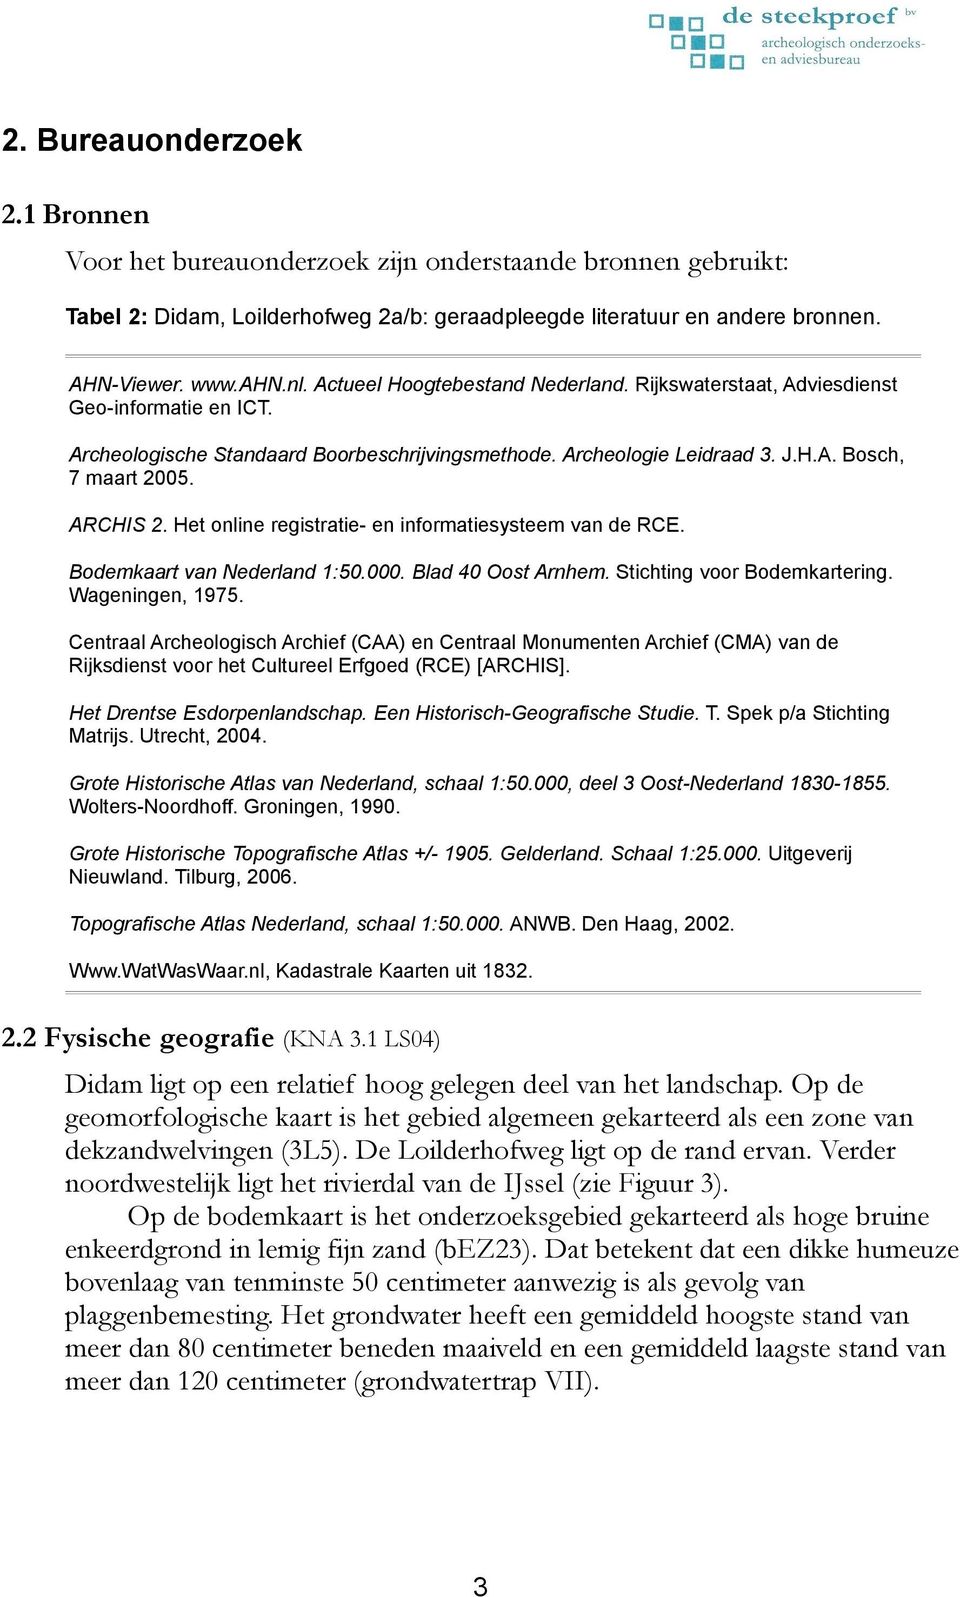 Het online registratie- en informatiesysteem van de RCE. Bodemkaart van Nederland 1:50.000. Blad 40 Oost Arnhem. Stichting voor Bodemkartering. Wageningen, 1975.